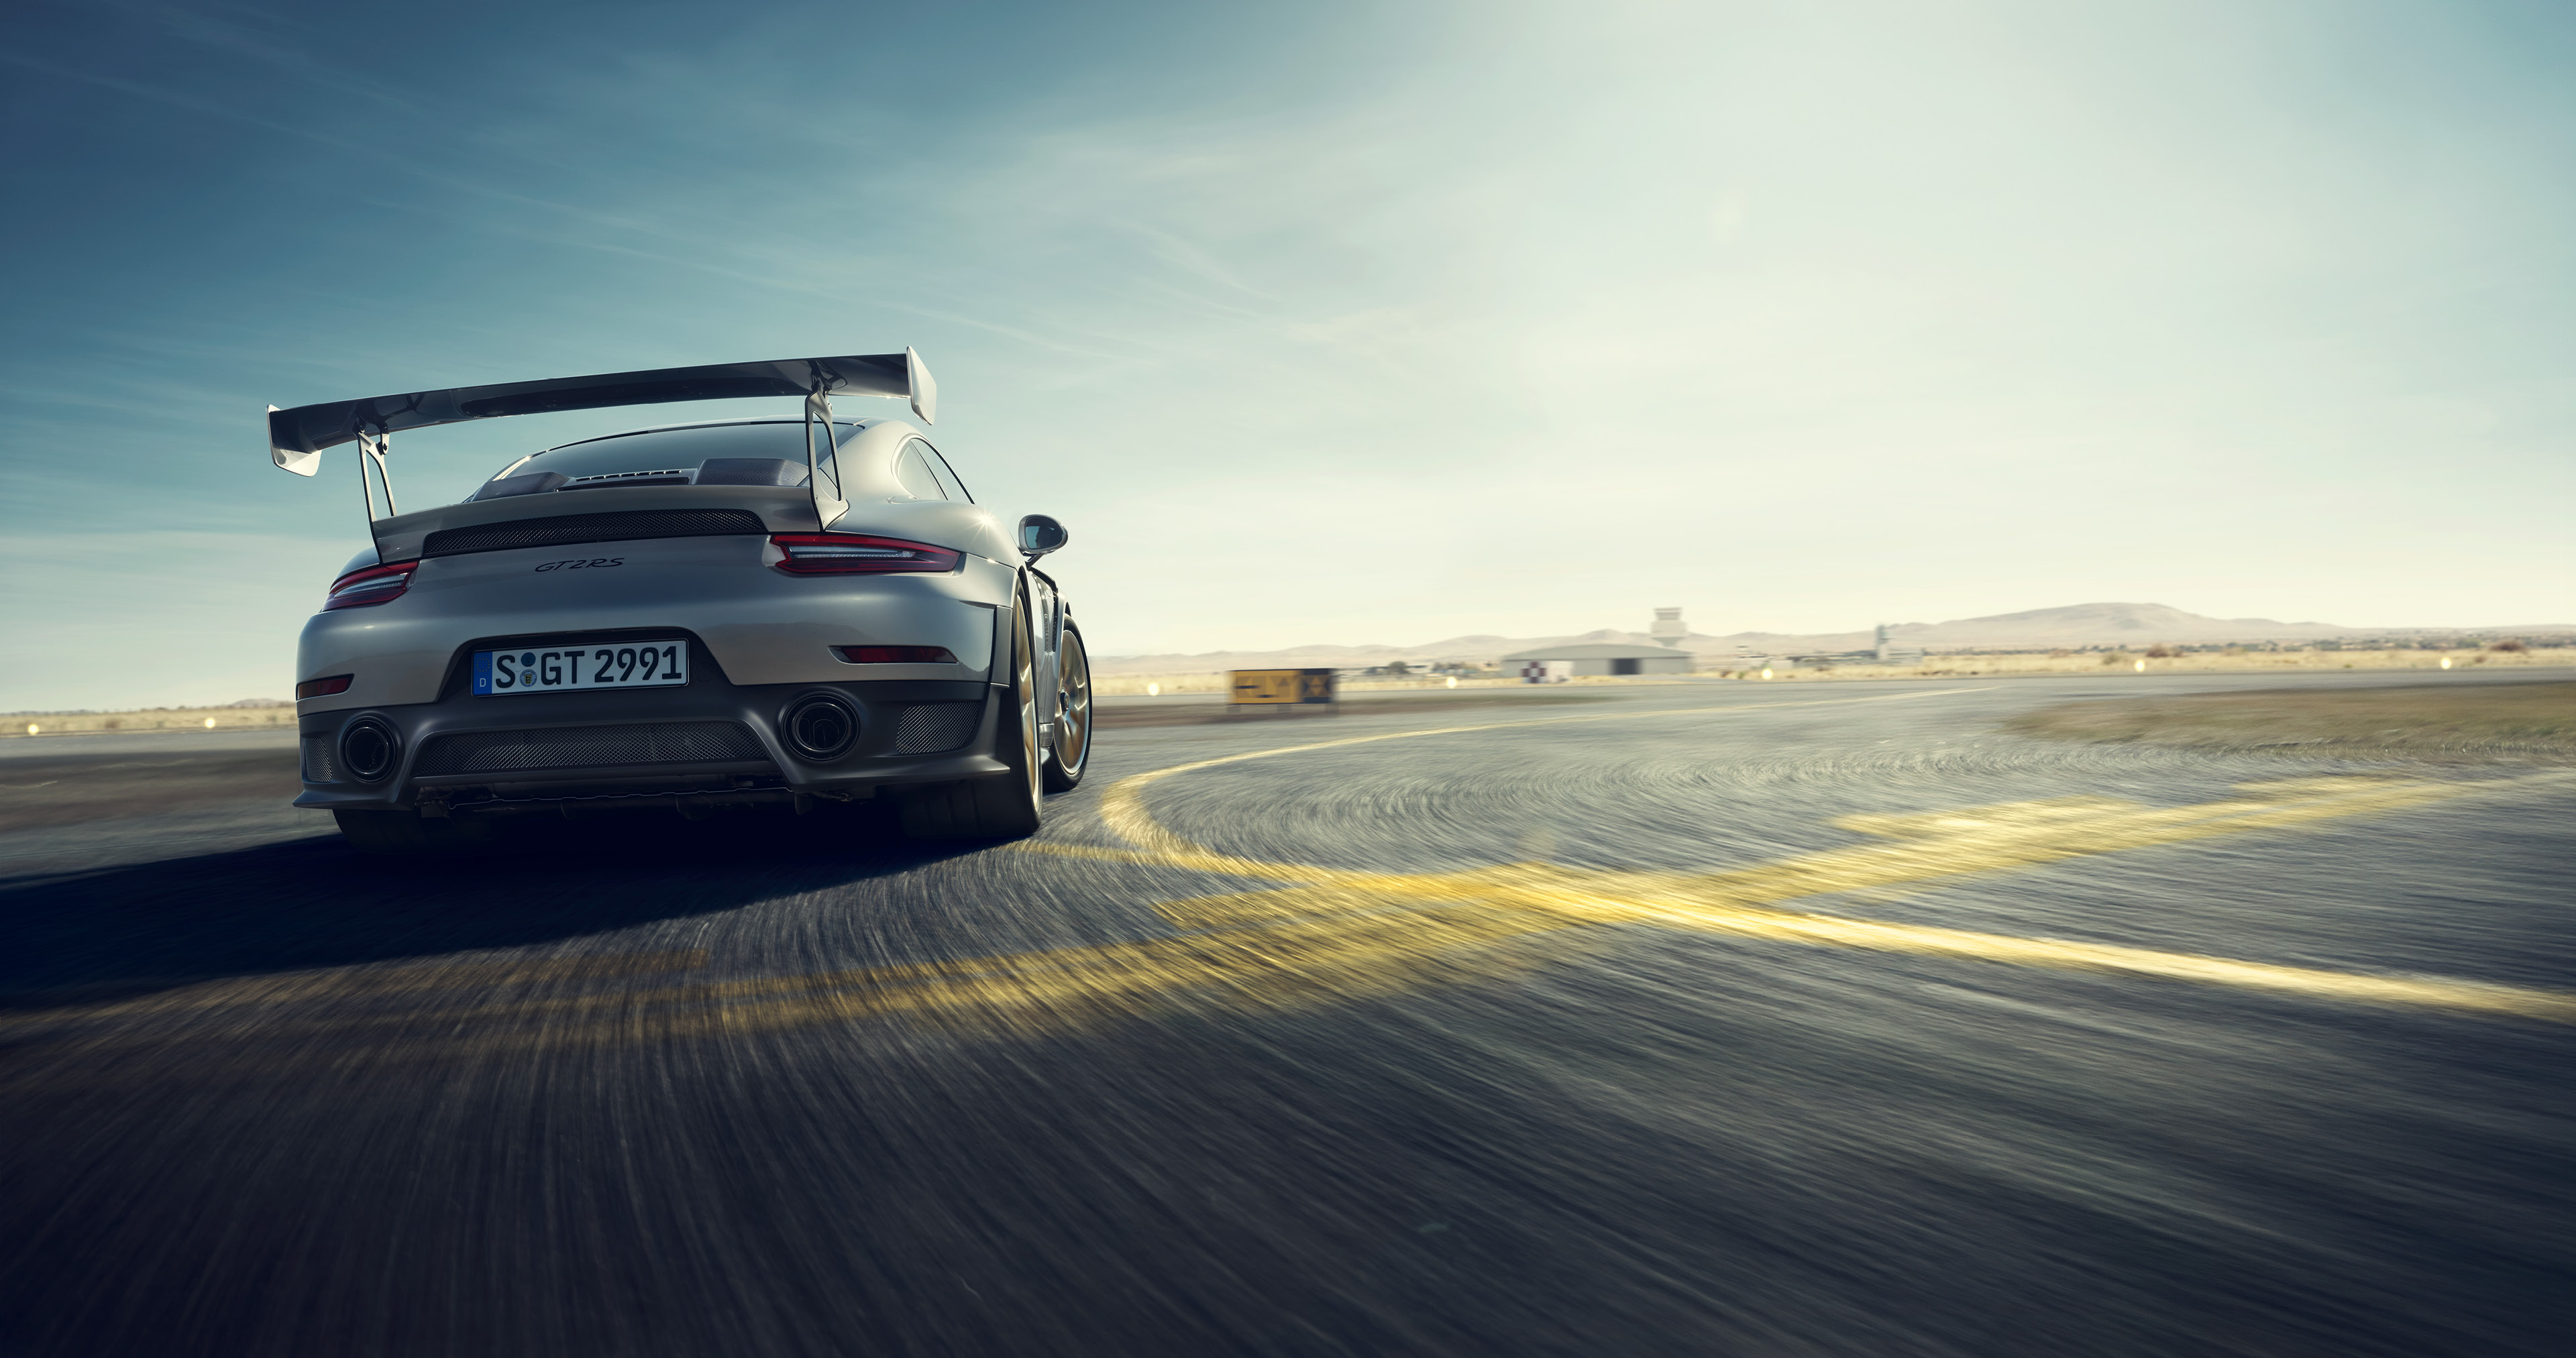 Porsche 911 Gt2 Rs 4k , HD Wallpaper & Backgrounds